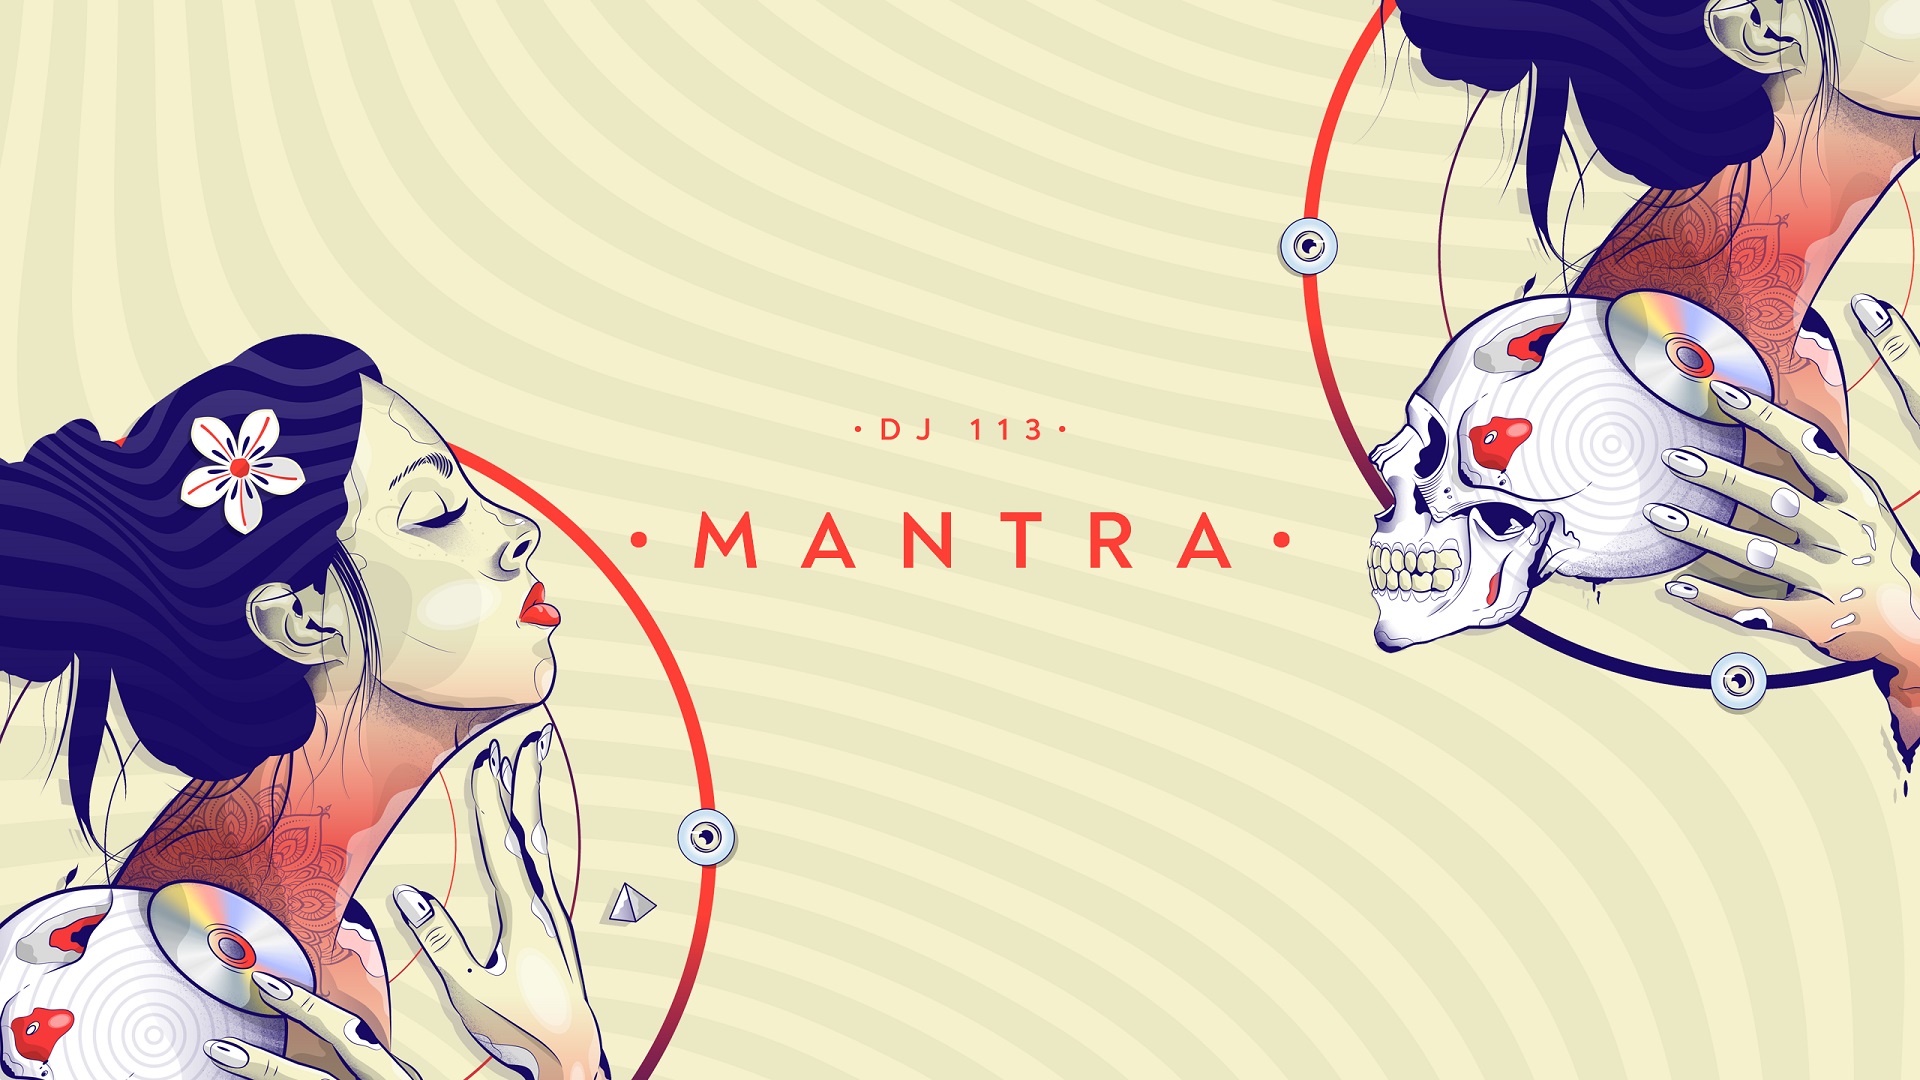 Escuche la primera parte de "Mantra", el nuevo beat tape de DJ 113